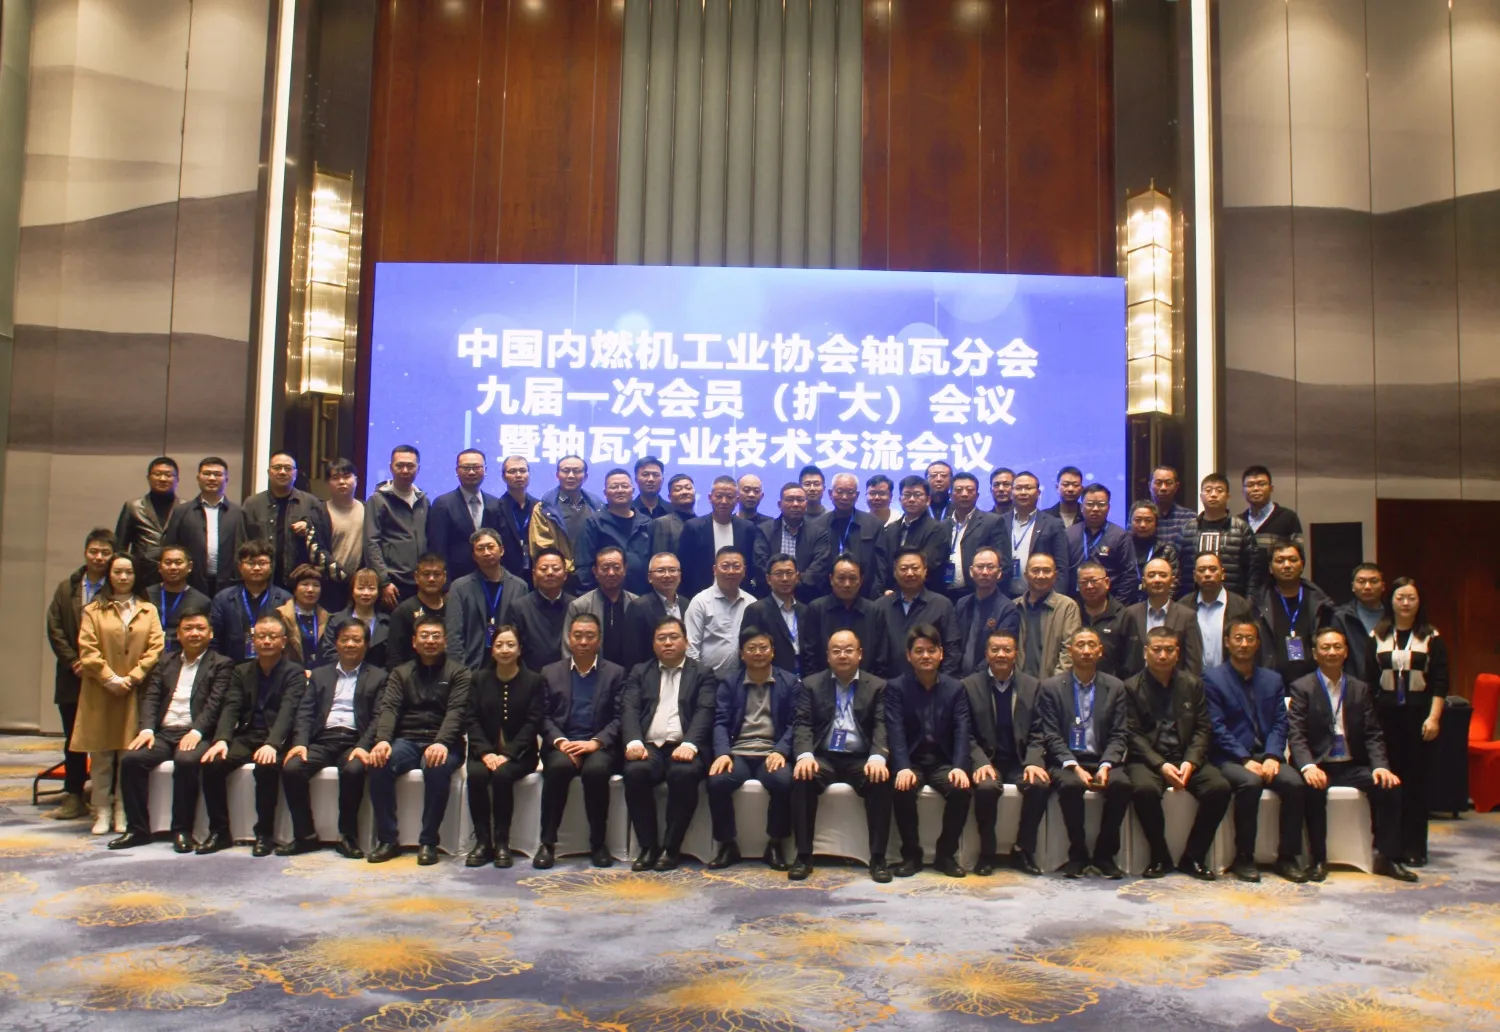 Η Ένατη Συνάντηση Μελών (Διευρυμένη) της Ένατης Συνόδου της Ένωσης Βιομηχανίας Εσωτερικής Καύσης της Κίνας πραγματοποιήθηκε στο Anhui